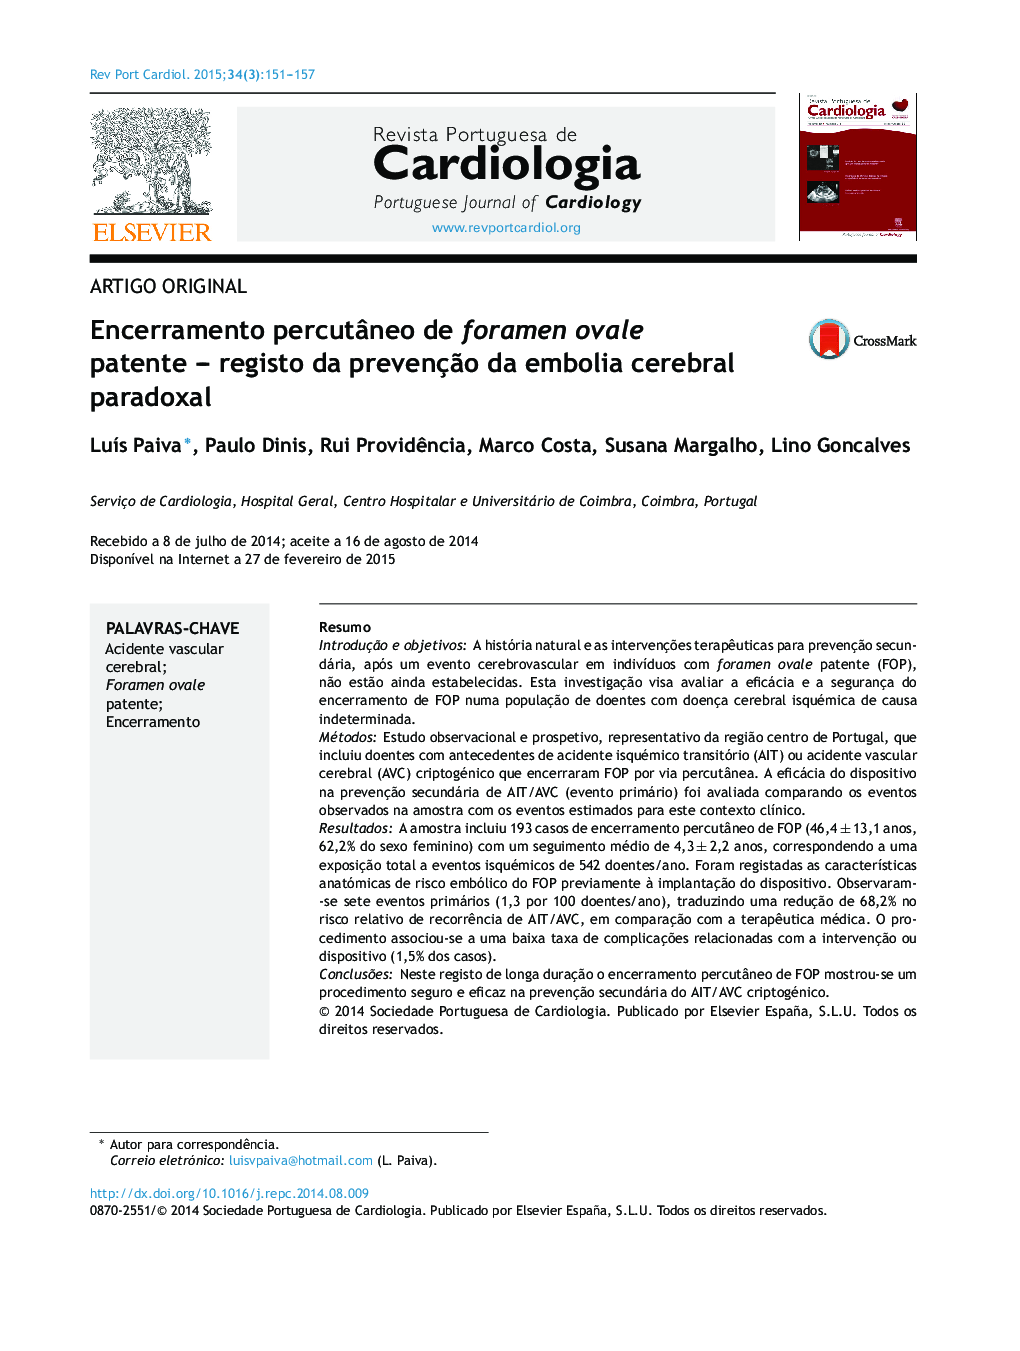 Encerramento percutâneo de foramen ovale patente – registo da prevenção da embolia cerebral paradoxal